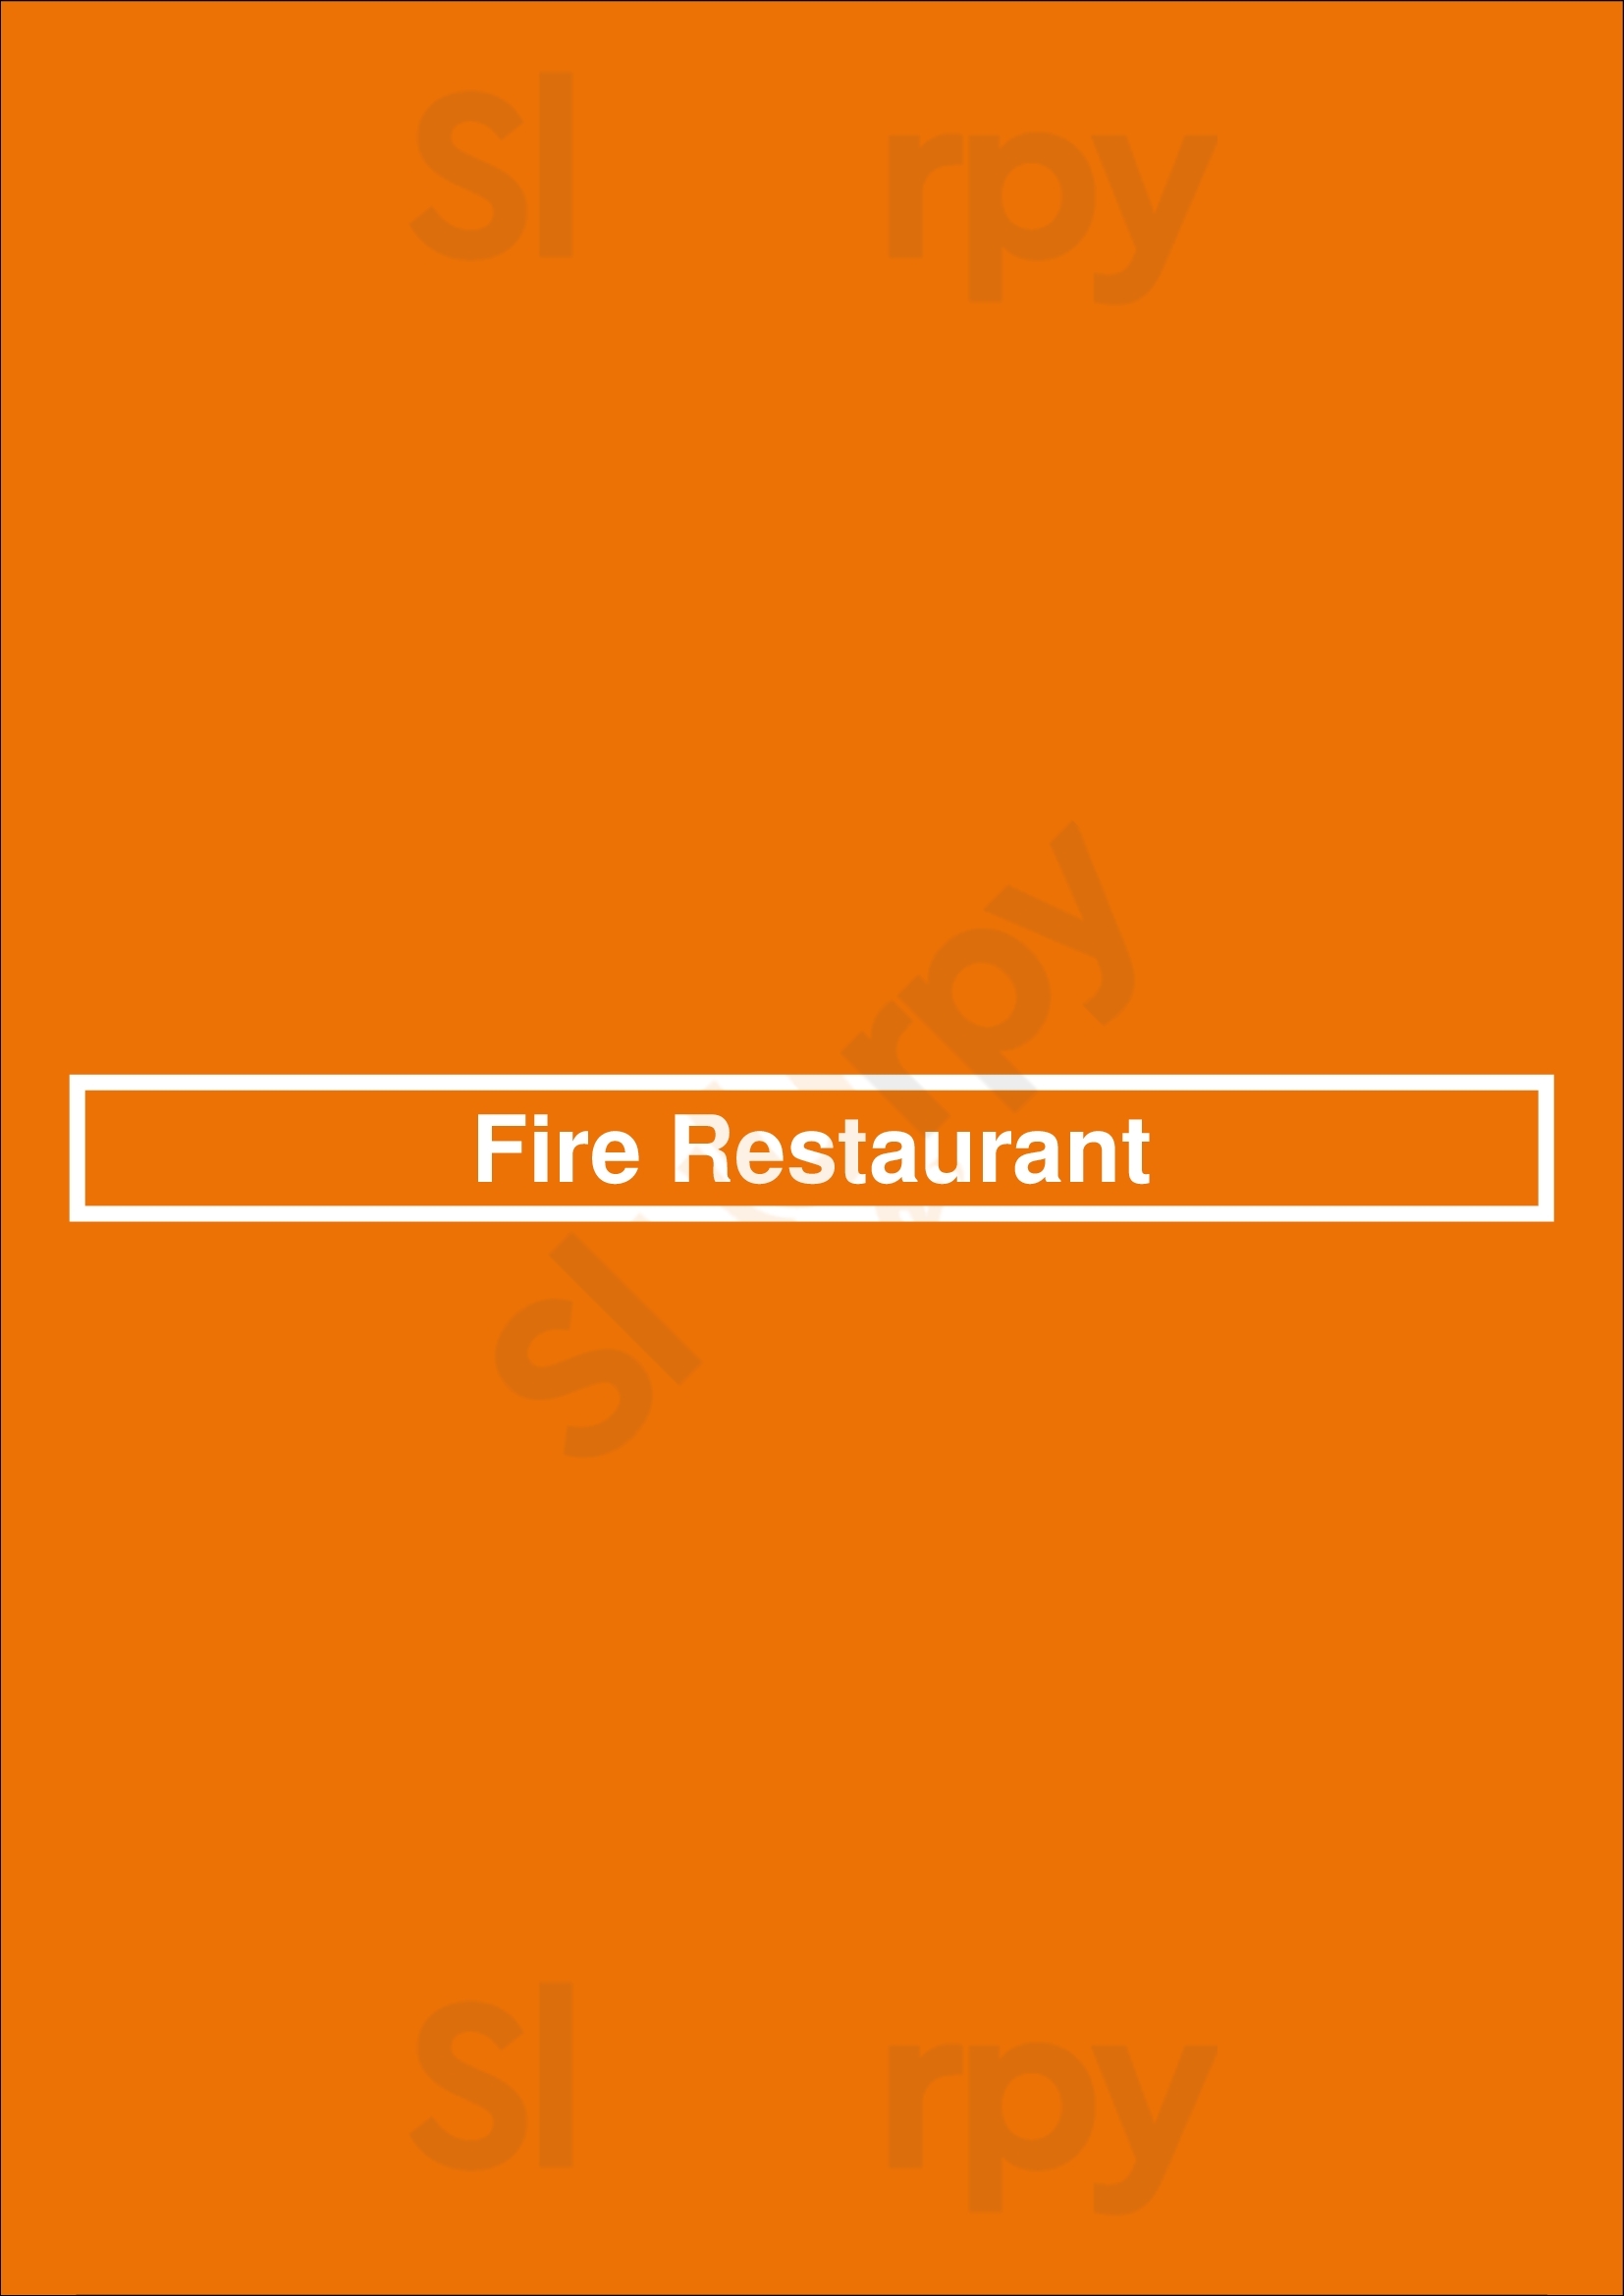 Fire Restaurant Dublin Menu - 1